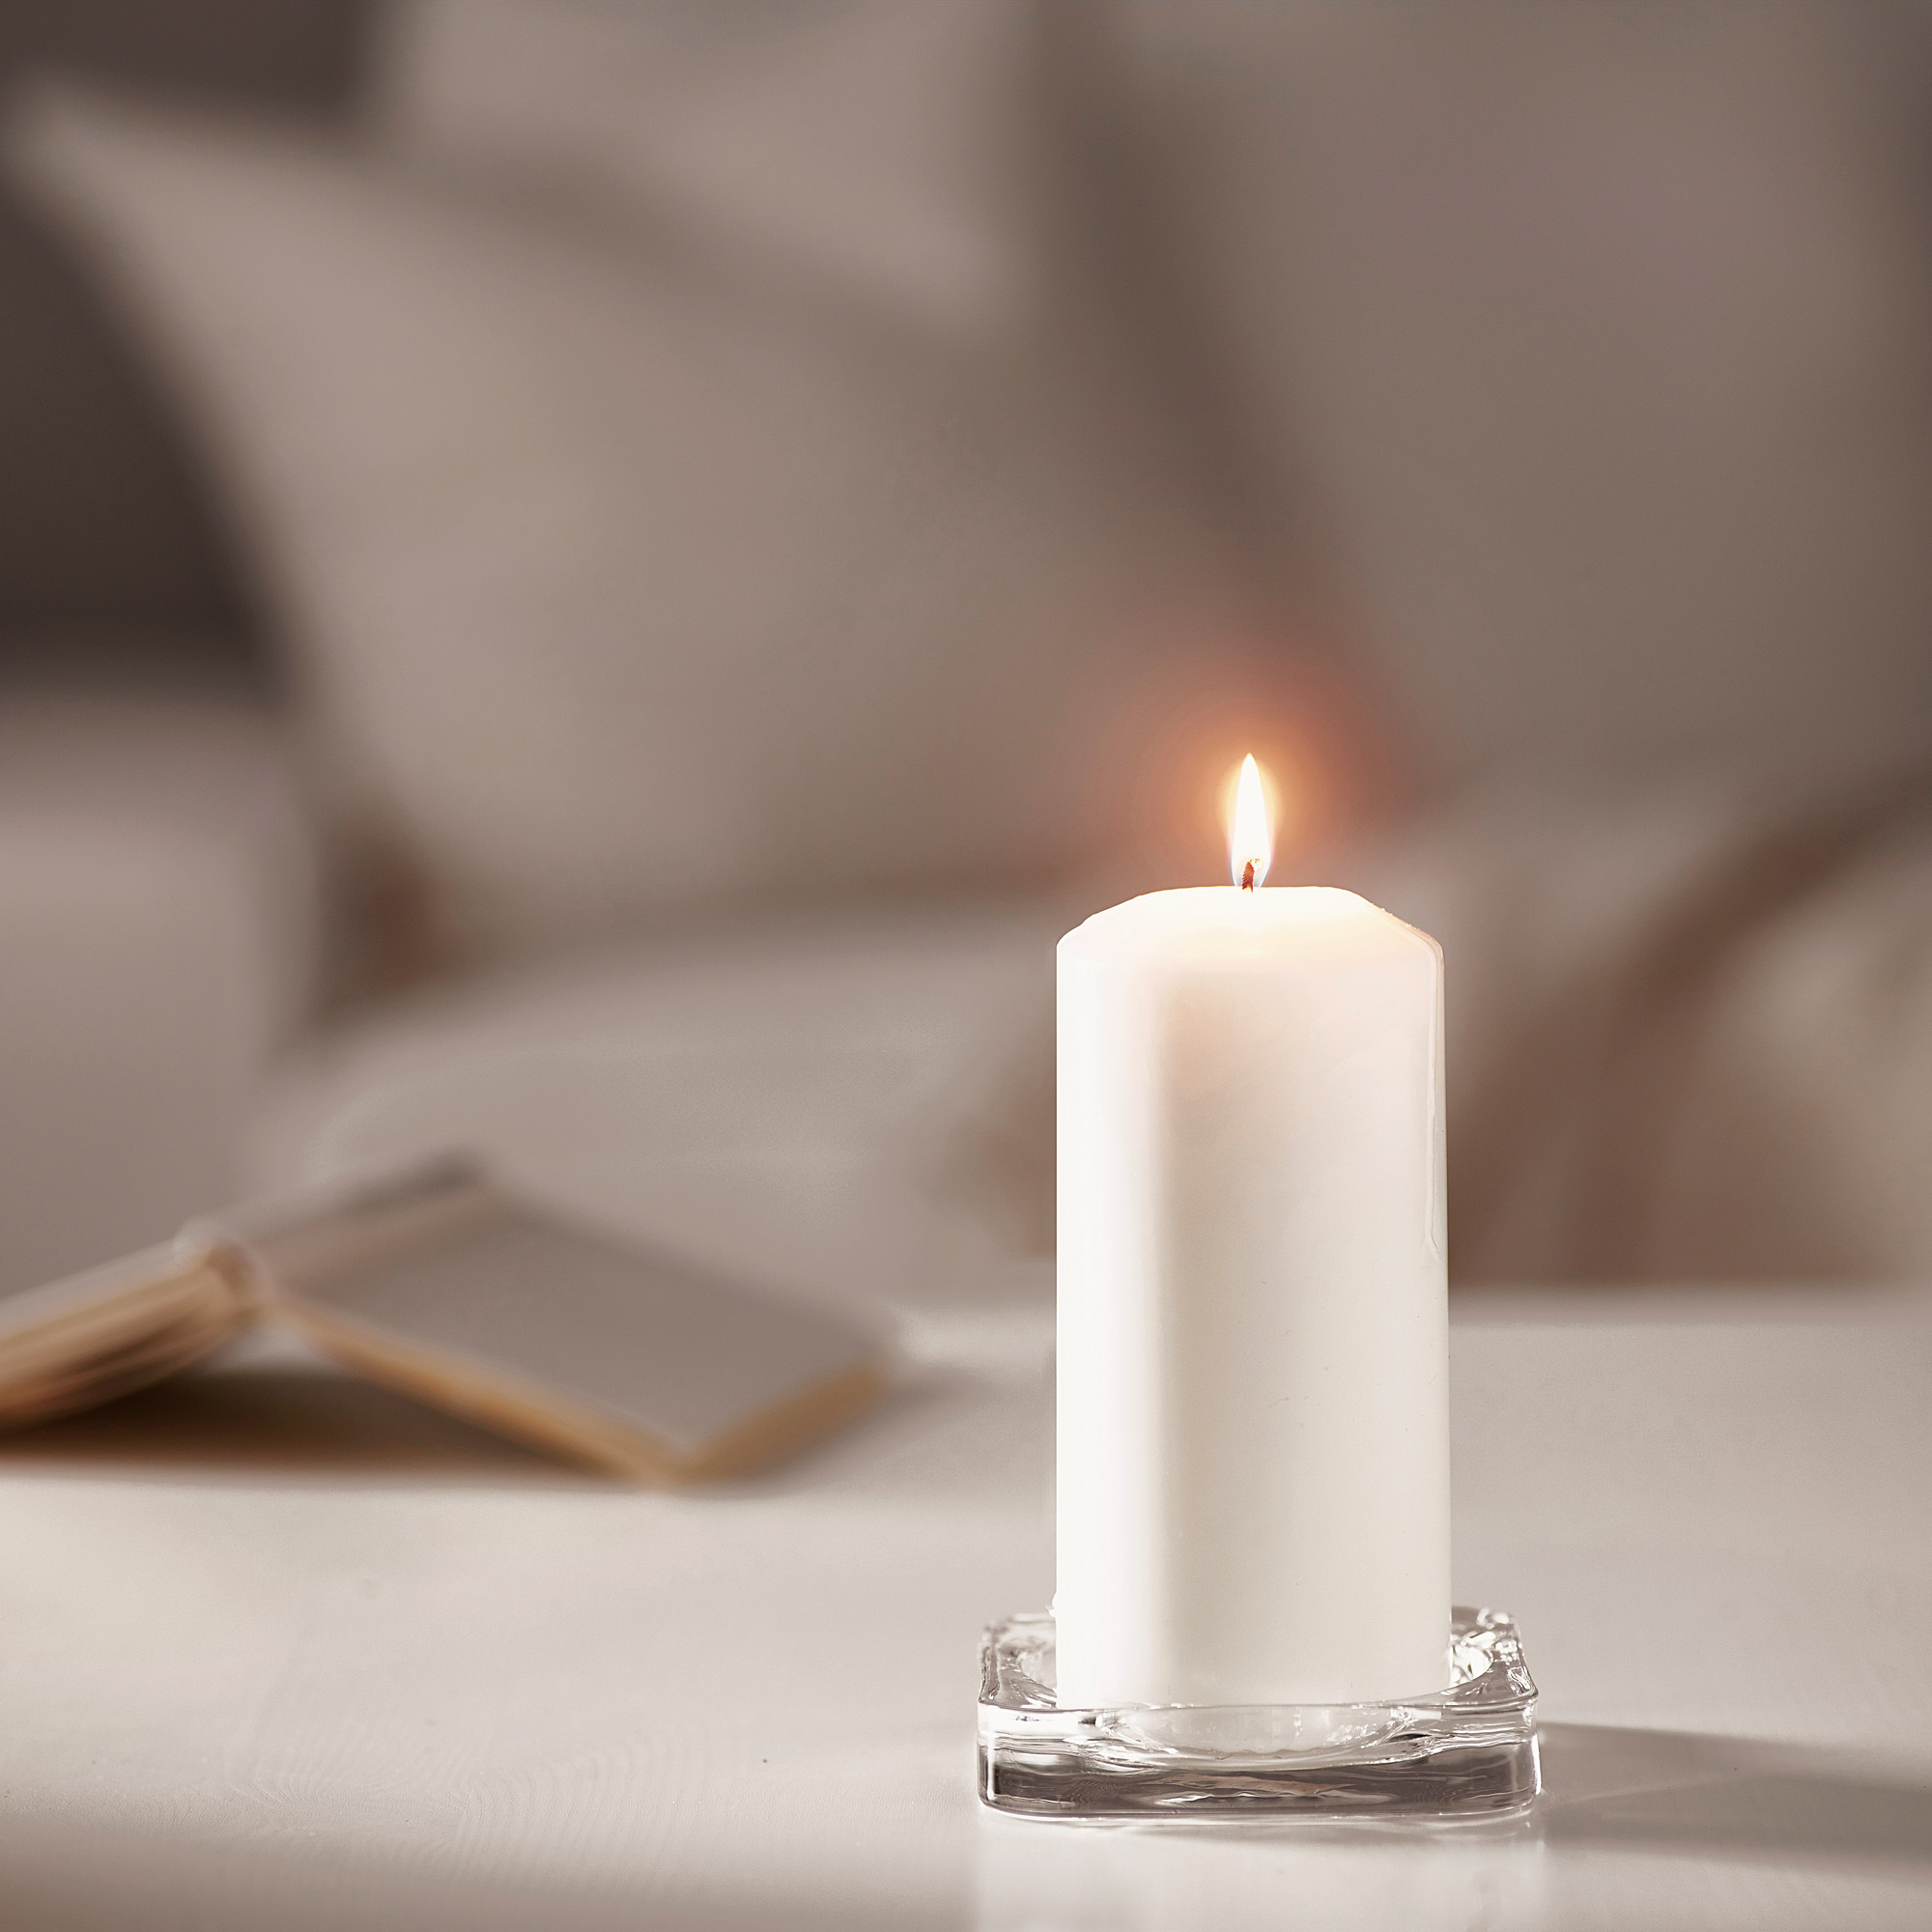 Чем и как удалить воск от свечи с мебели